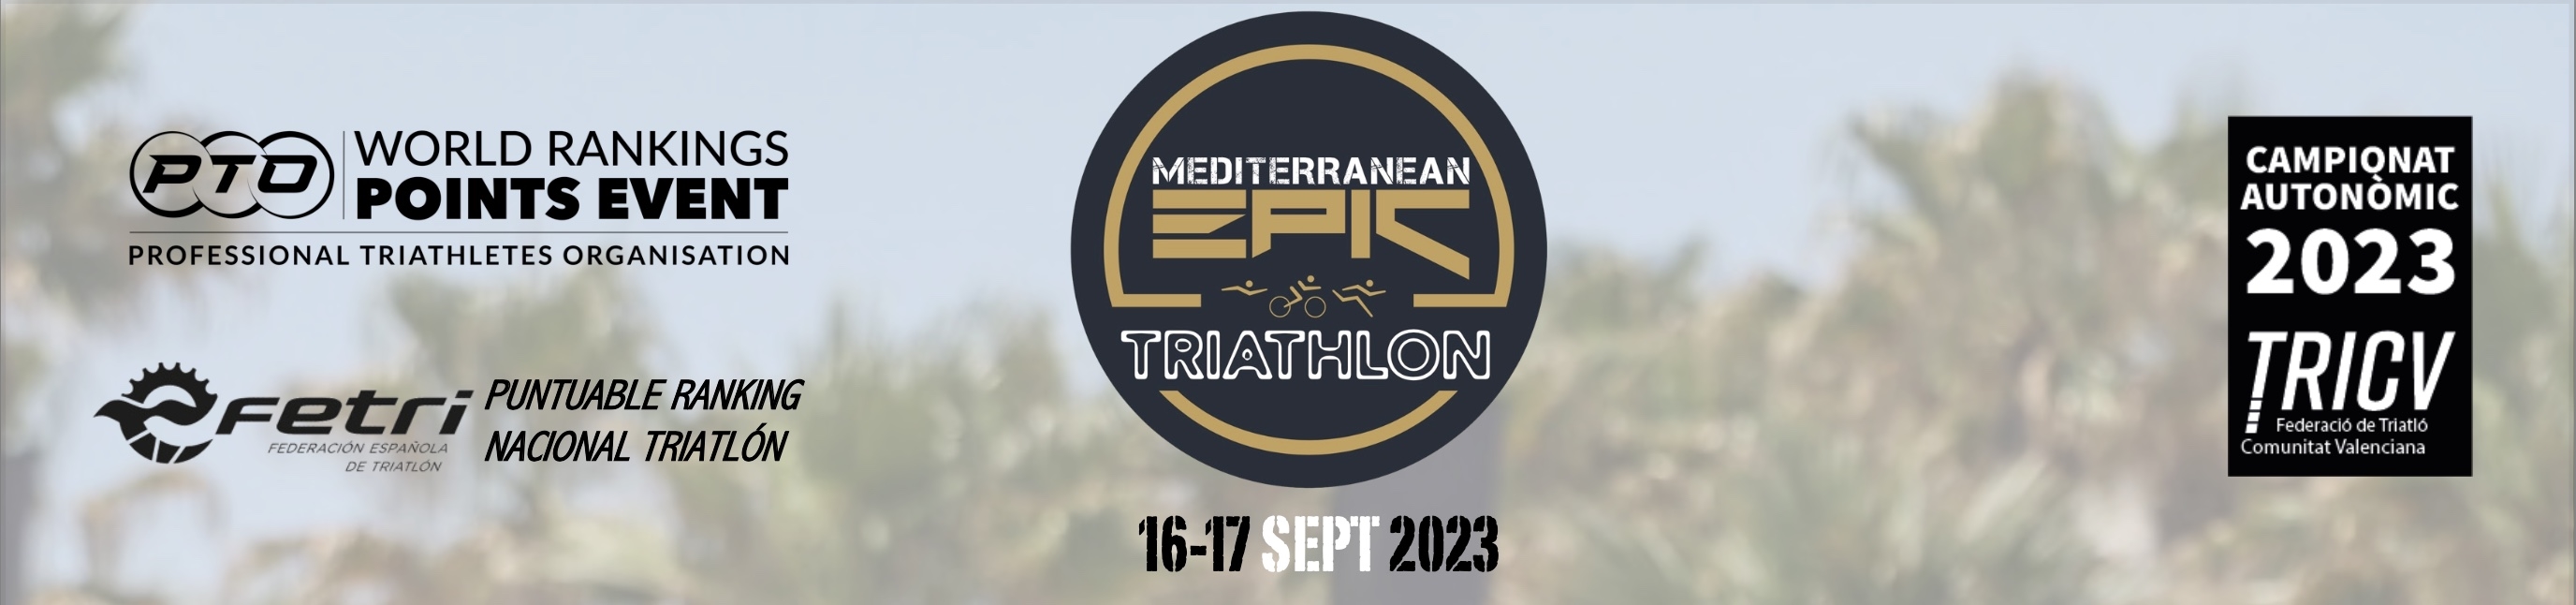 MEDITERRANEAN EPIC TRIATHLON 2023